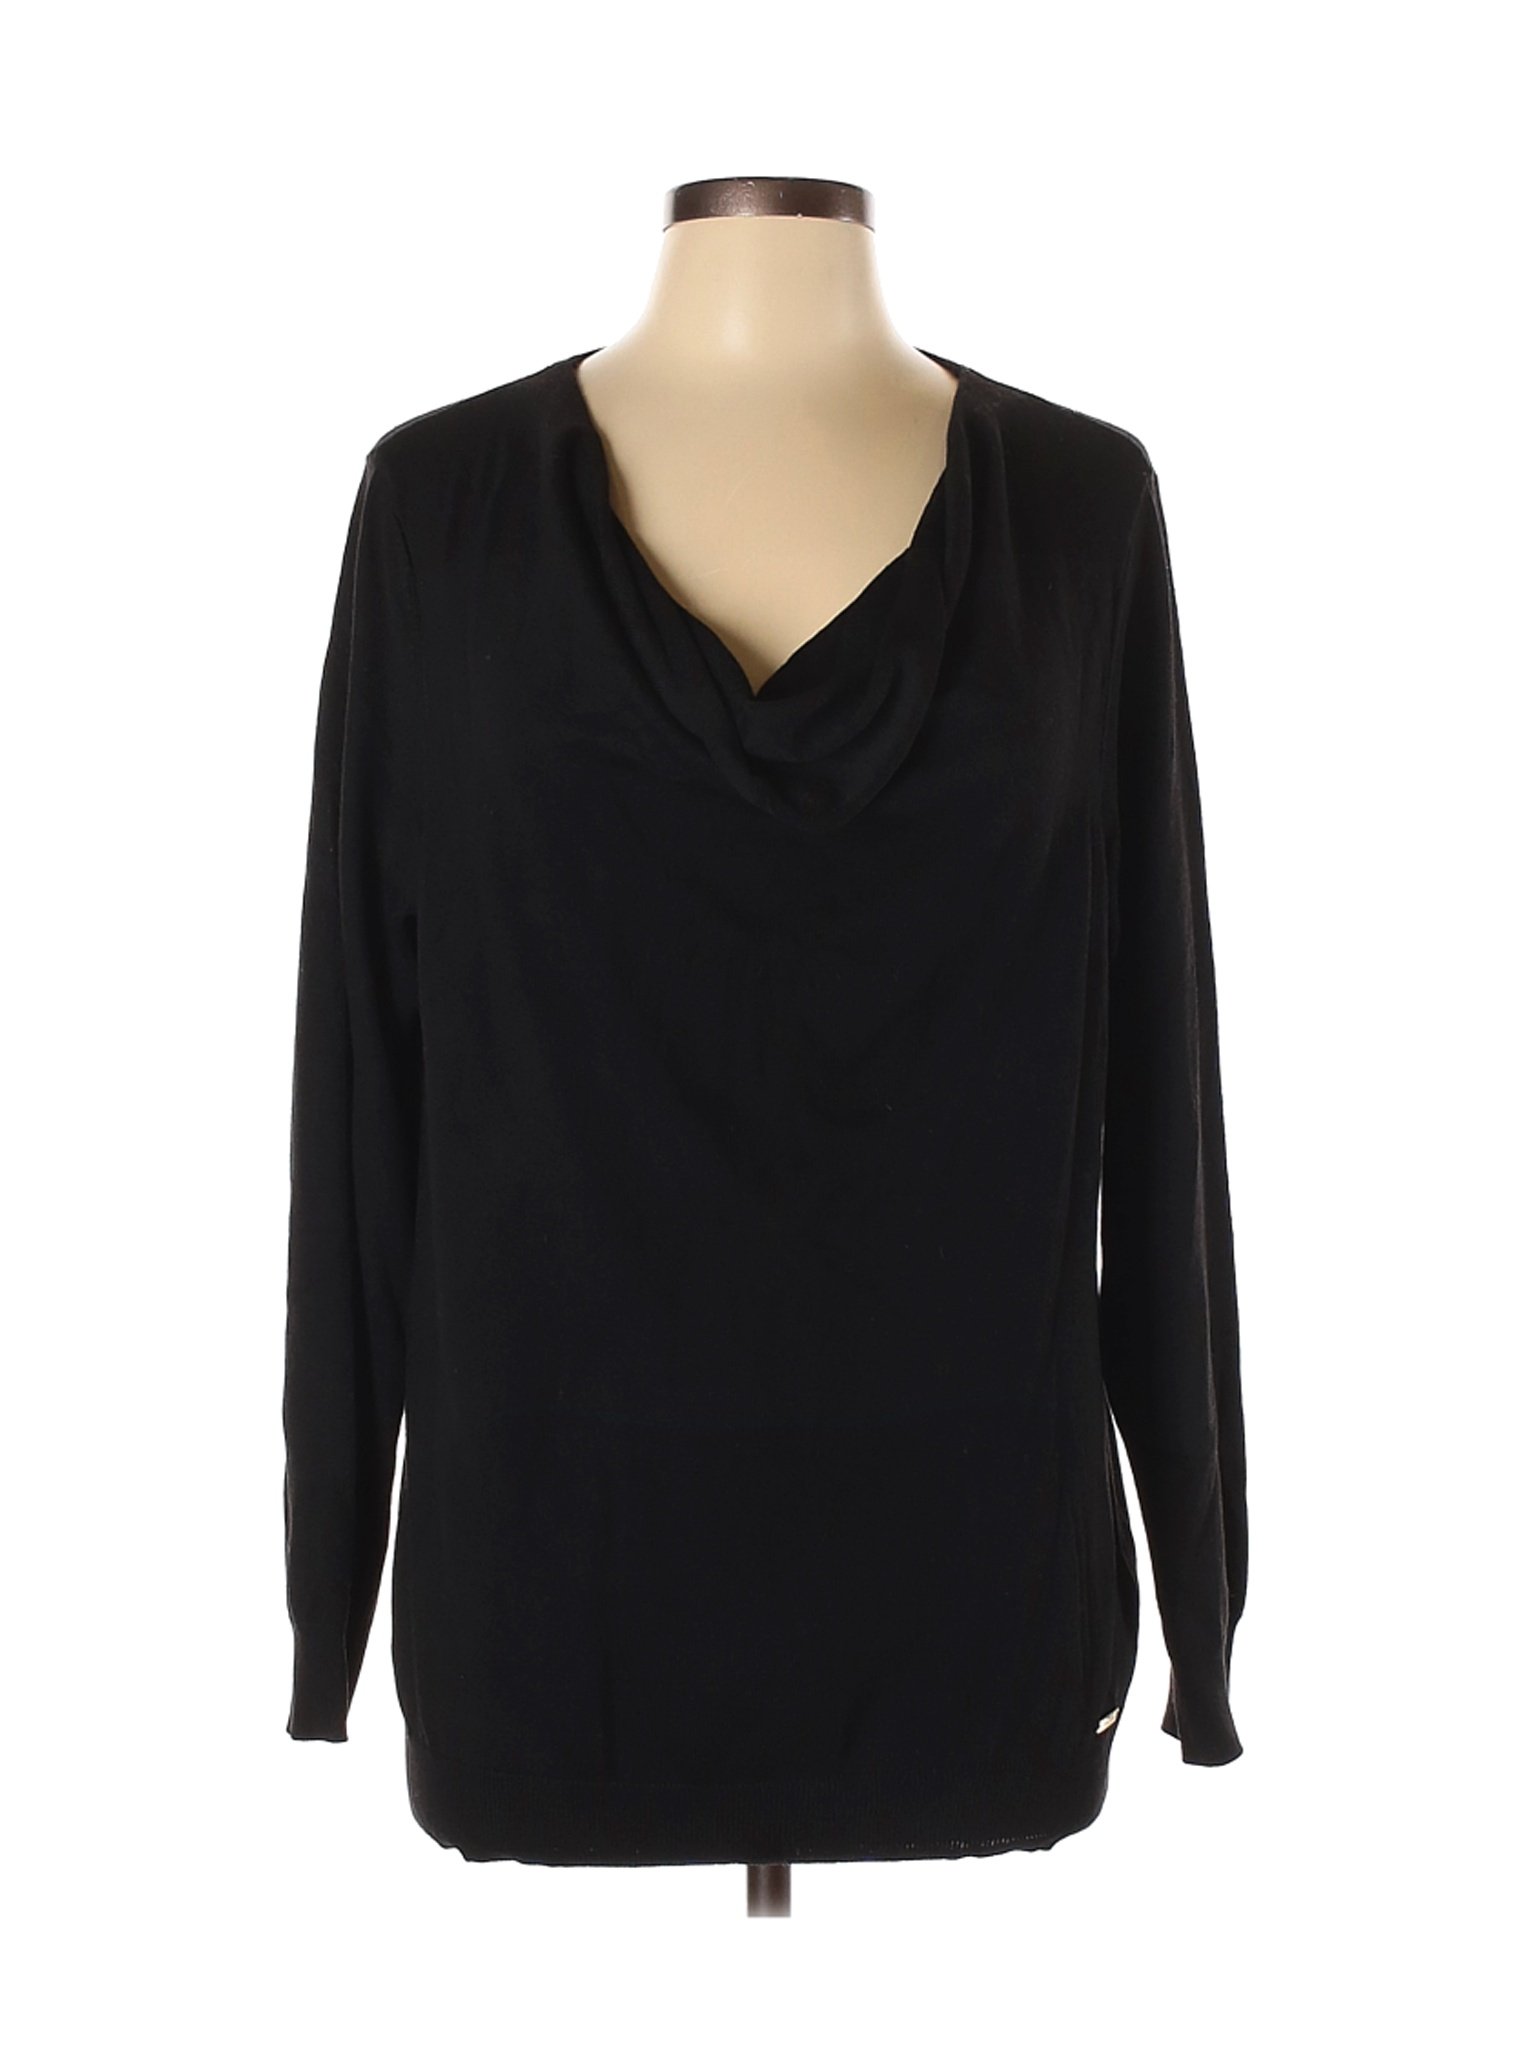 Calvin Klein Women Black Pullover Sweater L | eBay